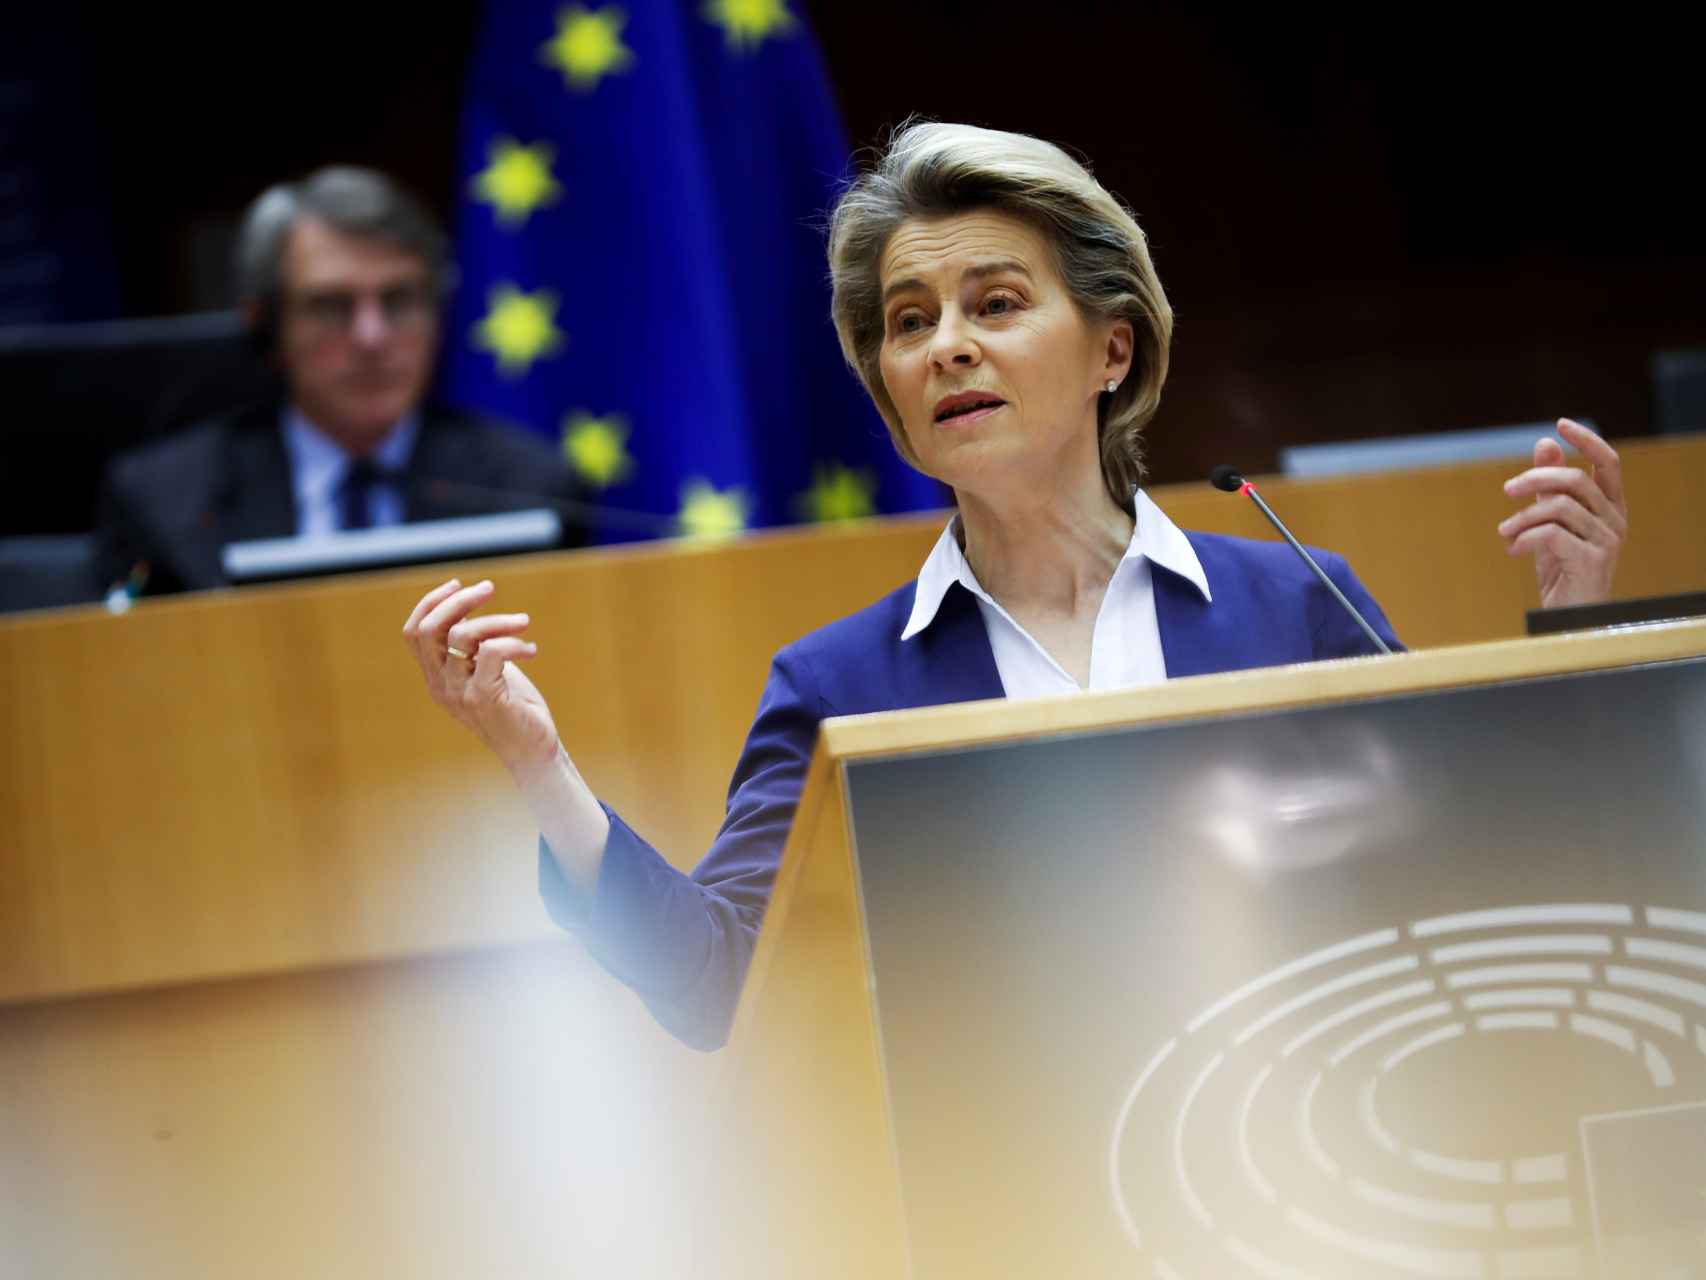 La presidenta de la Comisión, Ursula von der Leyen, durante una comparecencia en la Eurocámara